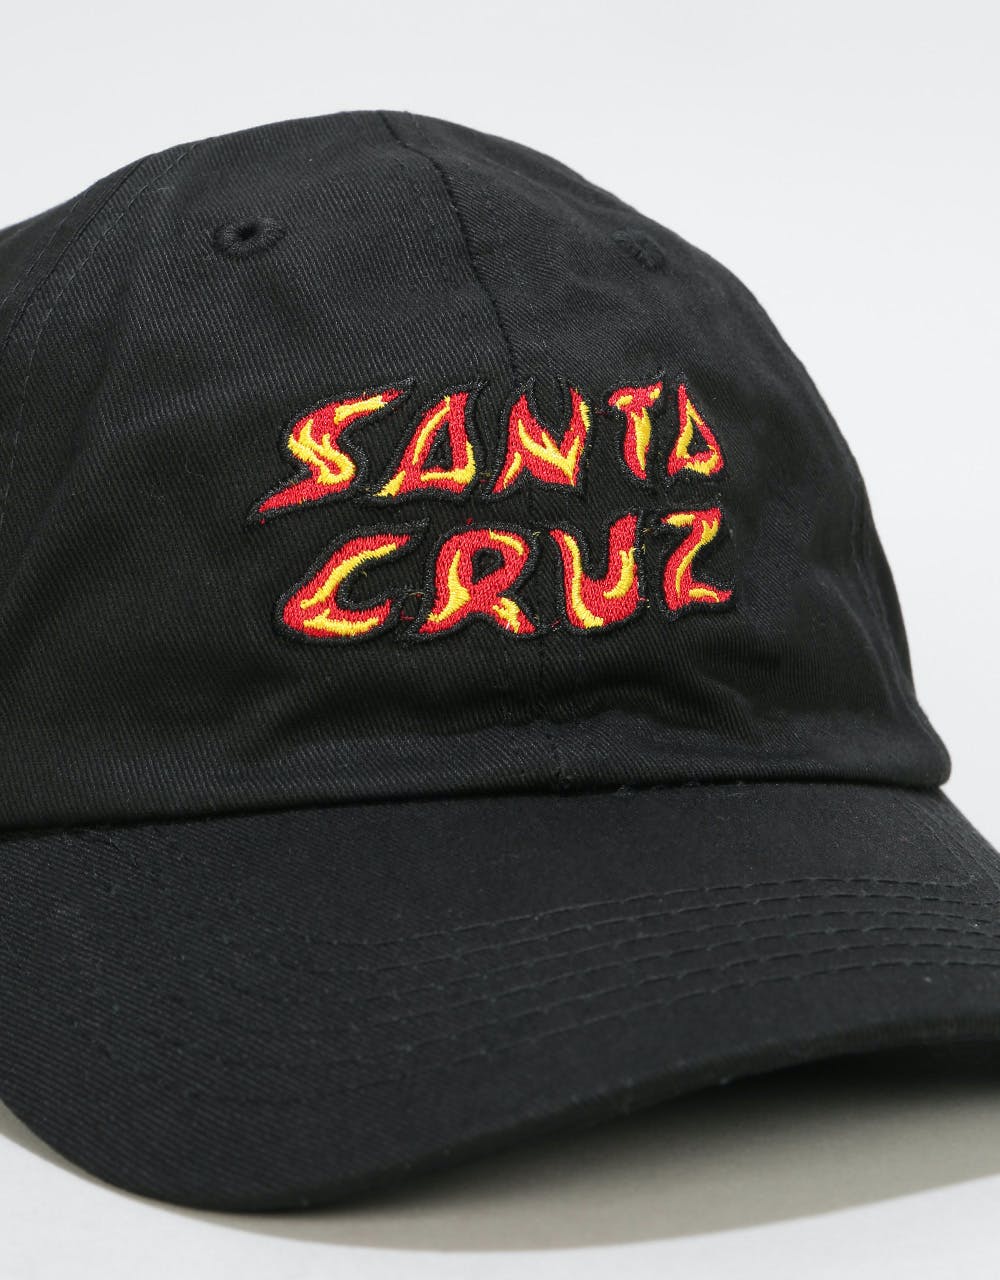 Santa Cruz Fire Dad Cap - Black